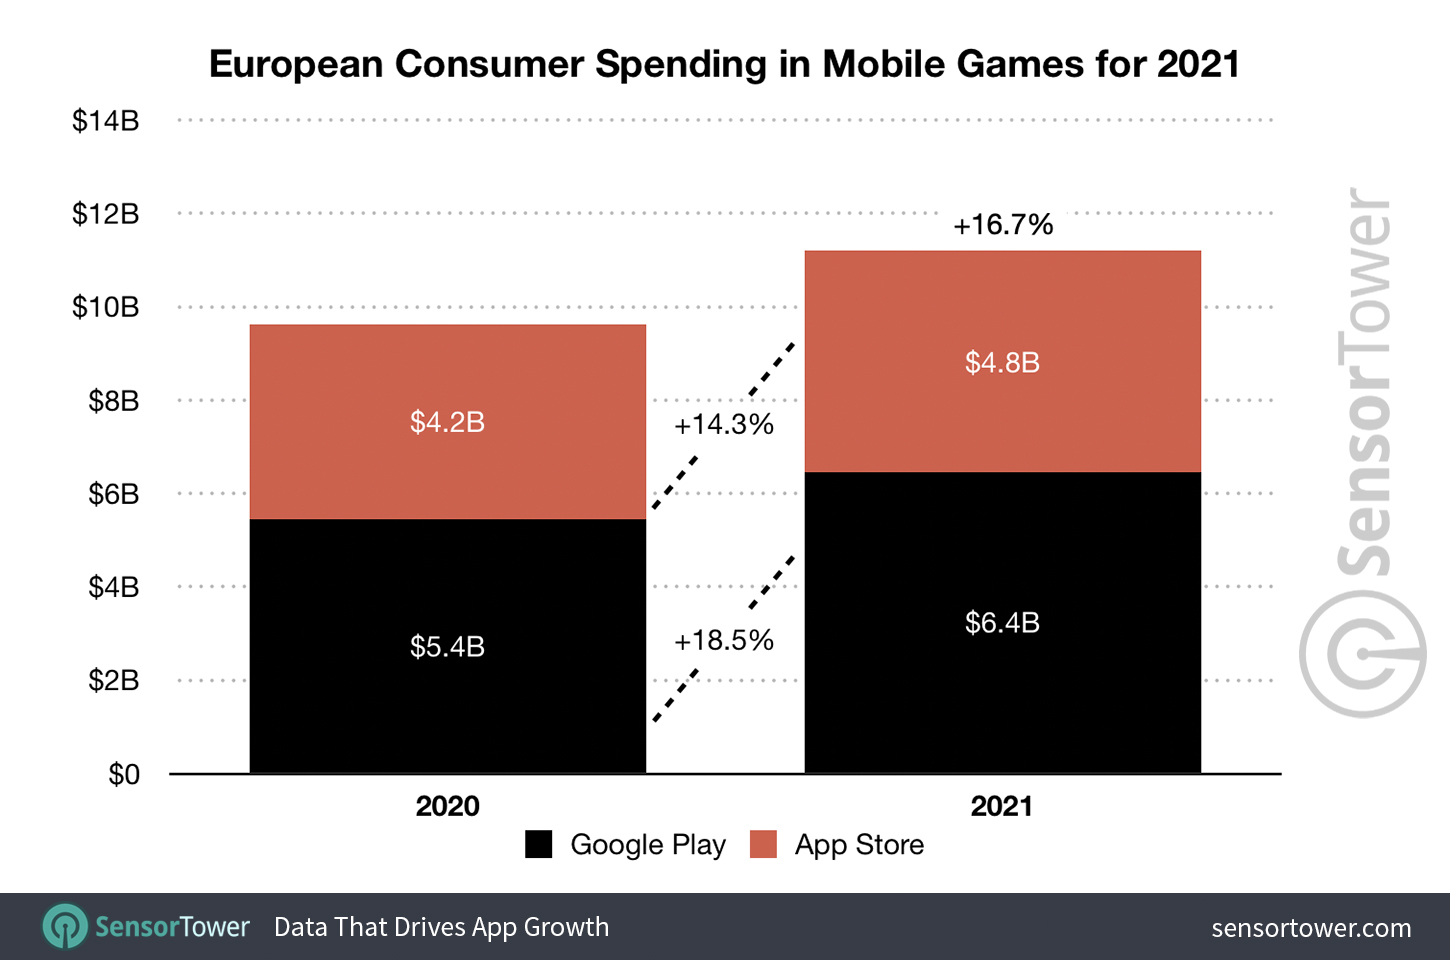 European Consumer Spending in Mobile Games for 2021